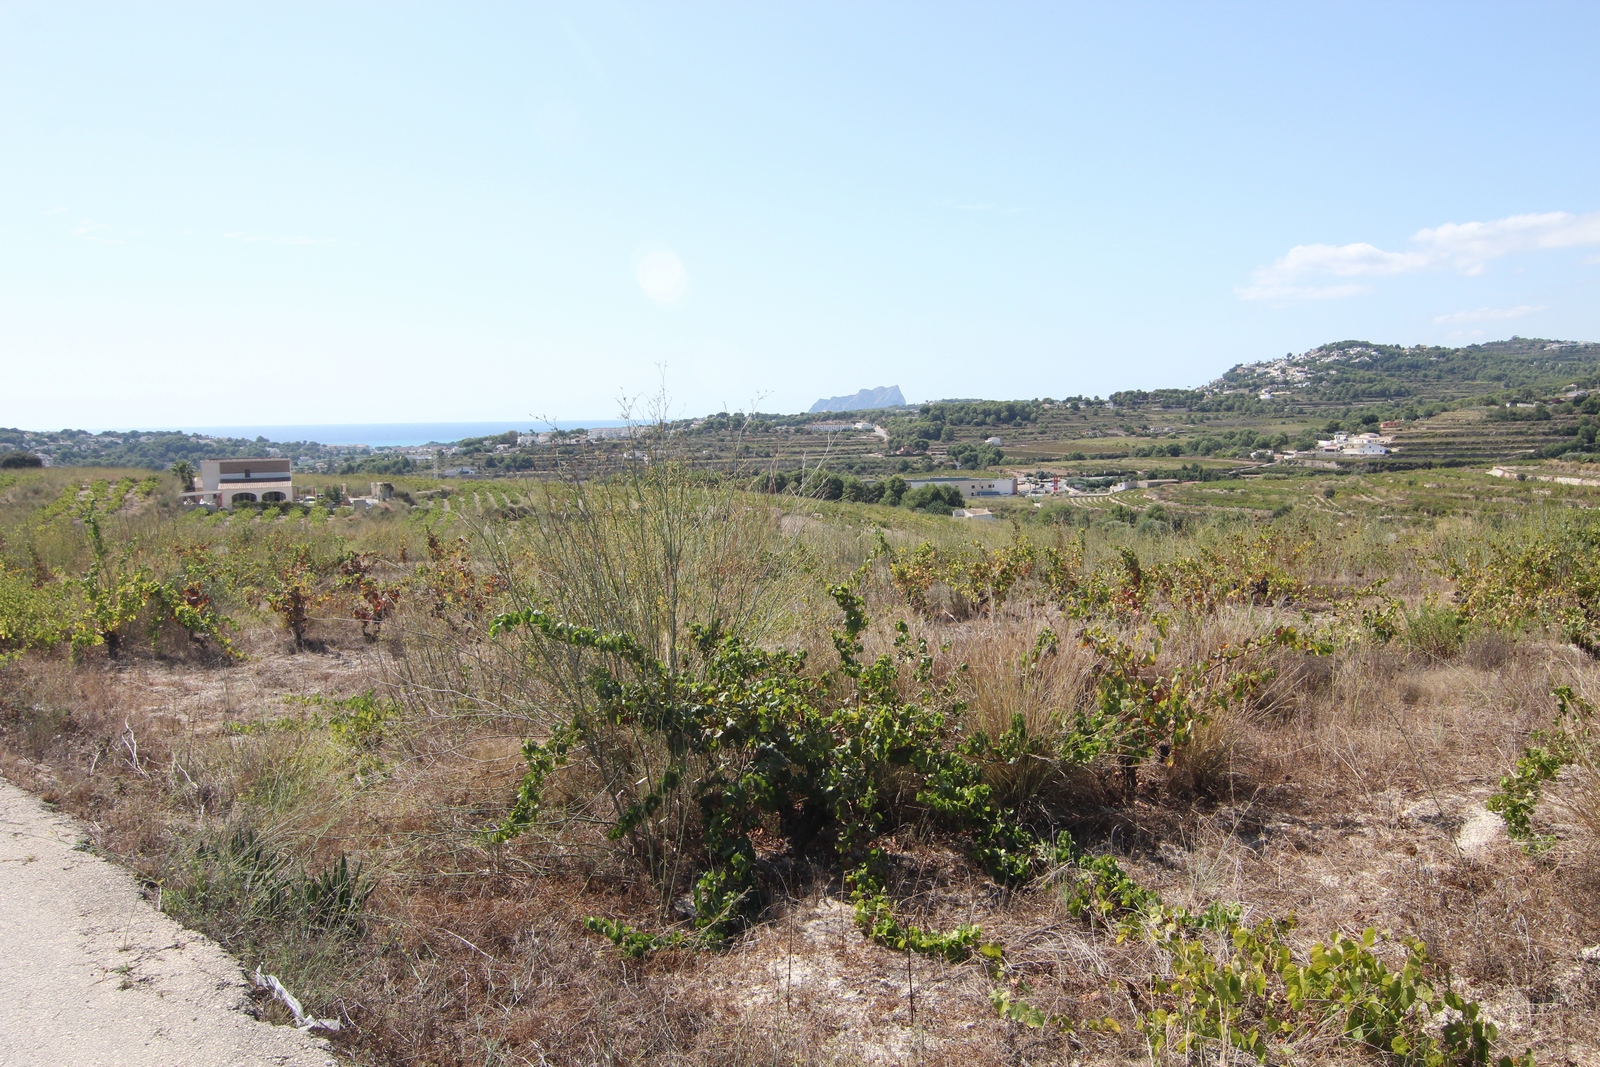 Terrain rustique à vendre avec vue panoramique.